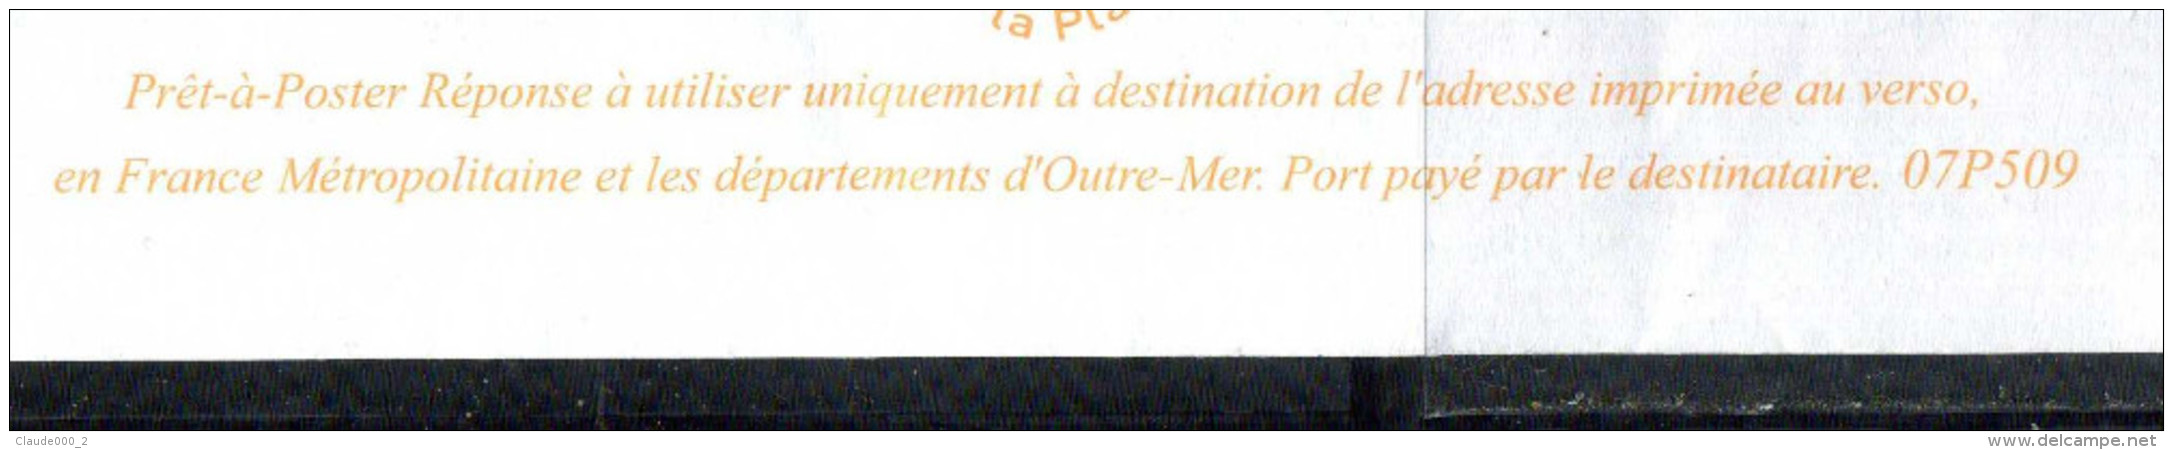 PAP Lamouche " SECOURS CATHOLIQUE RESEAU MONDIAL CARITAS " Port Payé Par 07P509 NEUF ** - Prêts-à-poster: Réponse /Lamouche